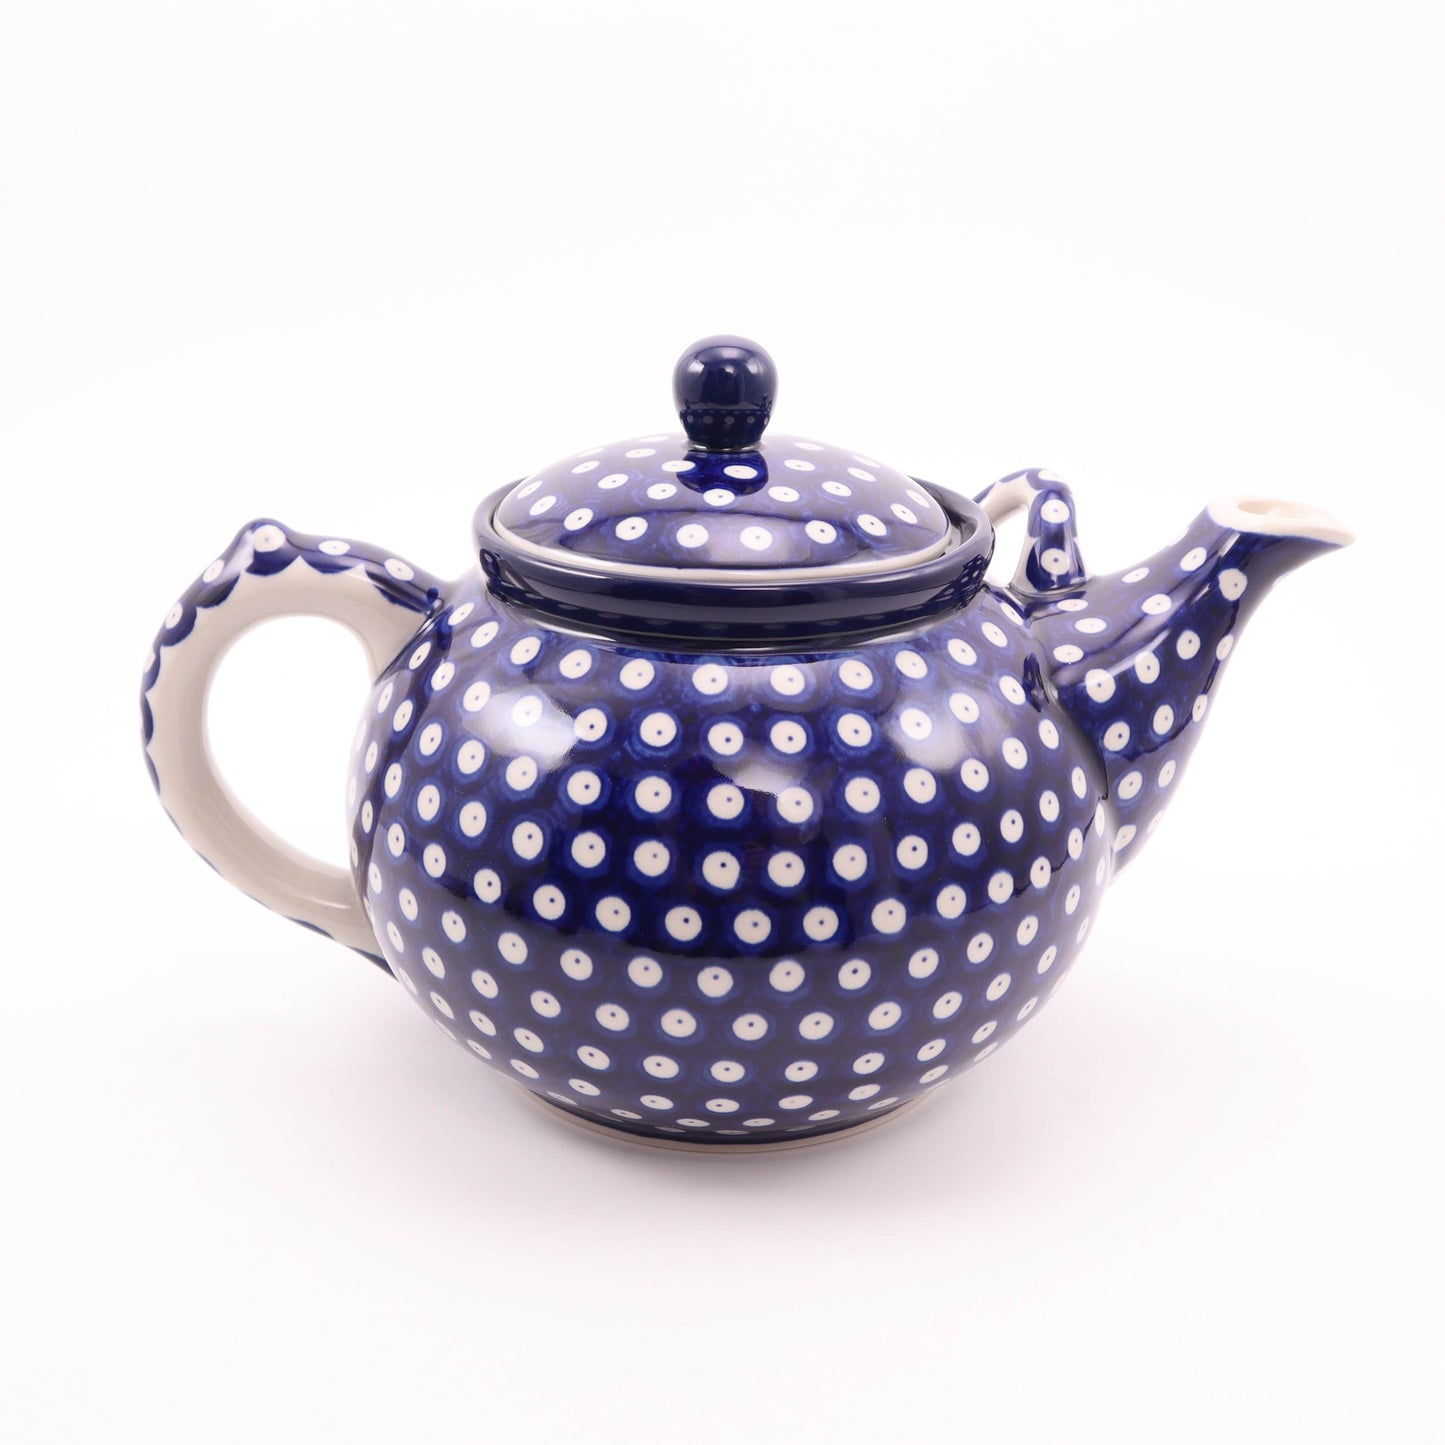 3L Teapot. Pattern: Owl Eye